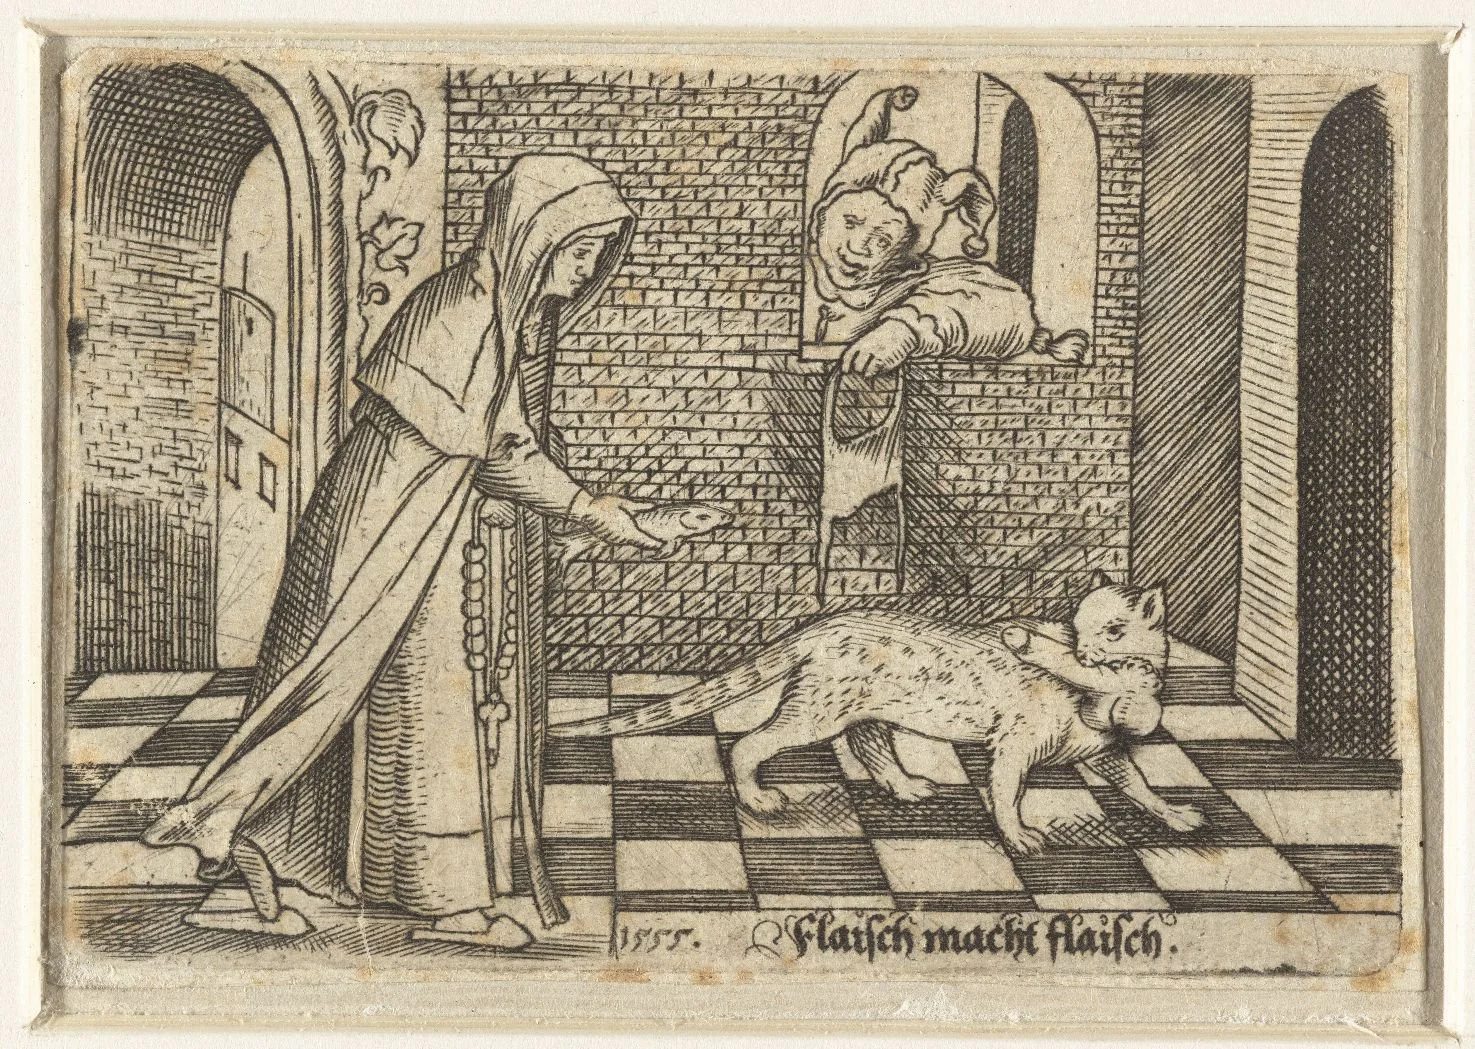 Visiblement, le vol de pénis par des chats était courant au XVIème siècle...